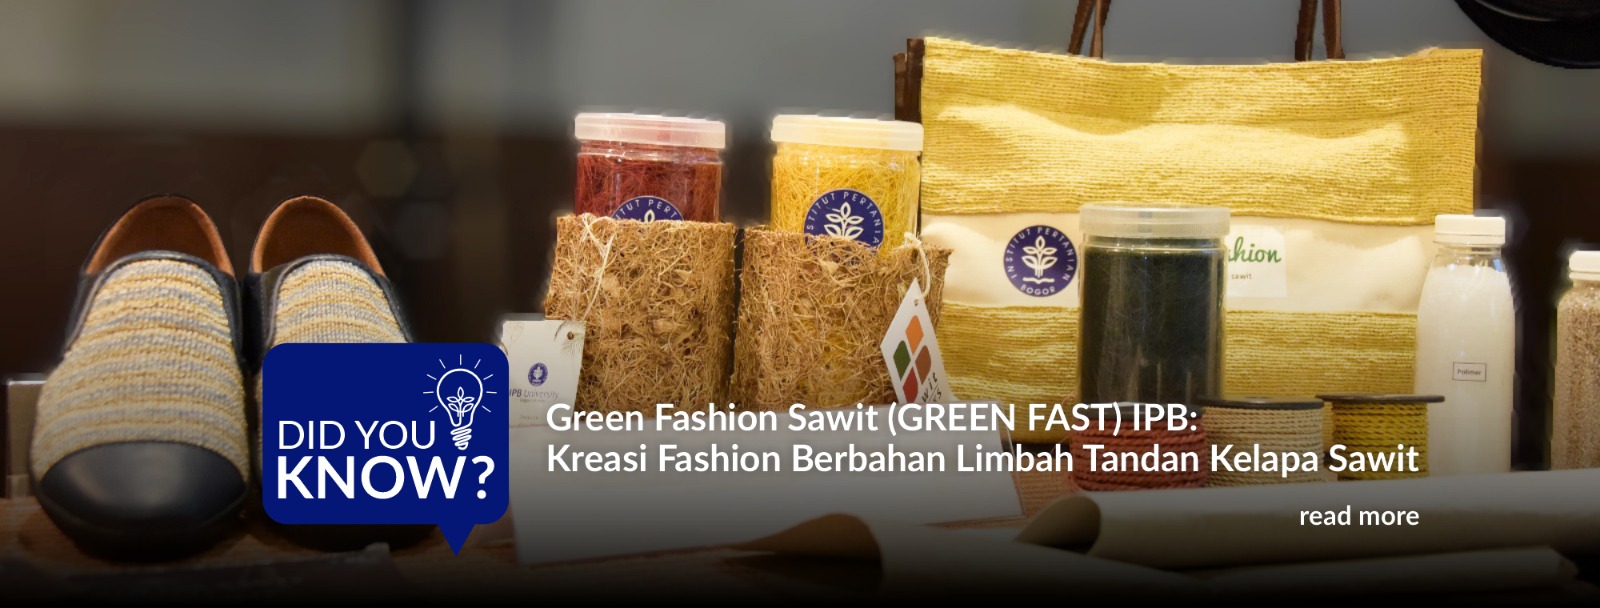 Green Fashion Sawit (GREEN FAST) IPB Kreasi Fashion Berbahan Limbah Tandan Kelapa Sawit